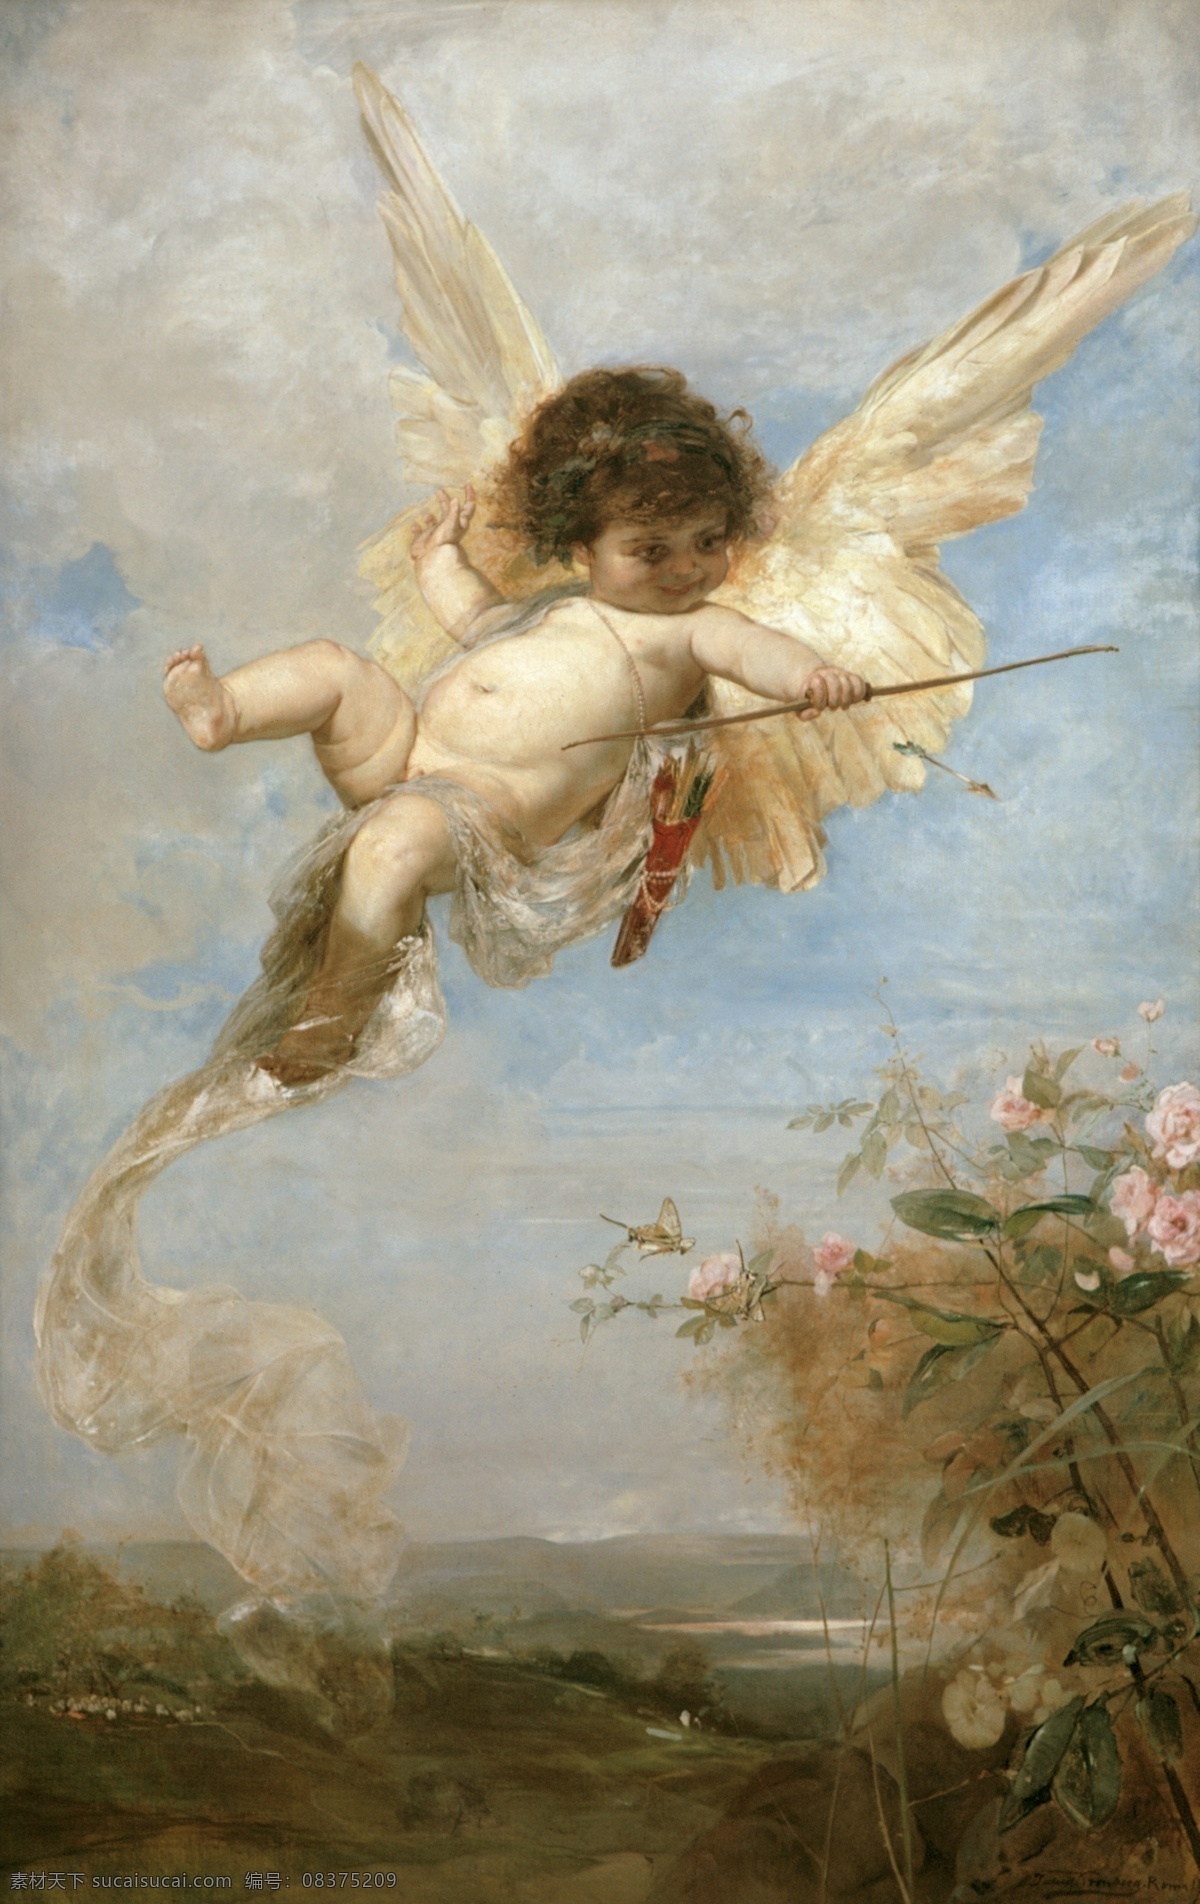 尤利 乌斯 克朗 伯格 作品 丘比特 希腊神话 爱神 爱之箭 小天使 俏皮可爱 19世纪油画 油画 文化艺术 绘画书法